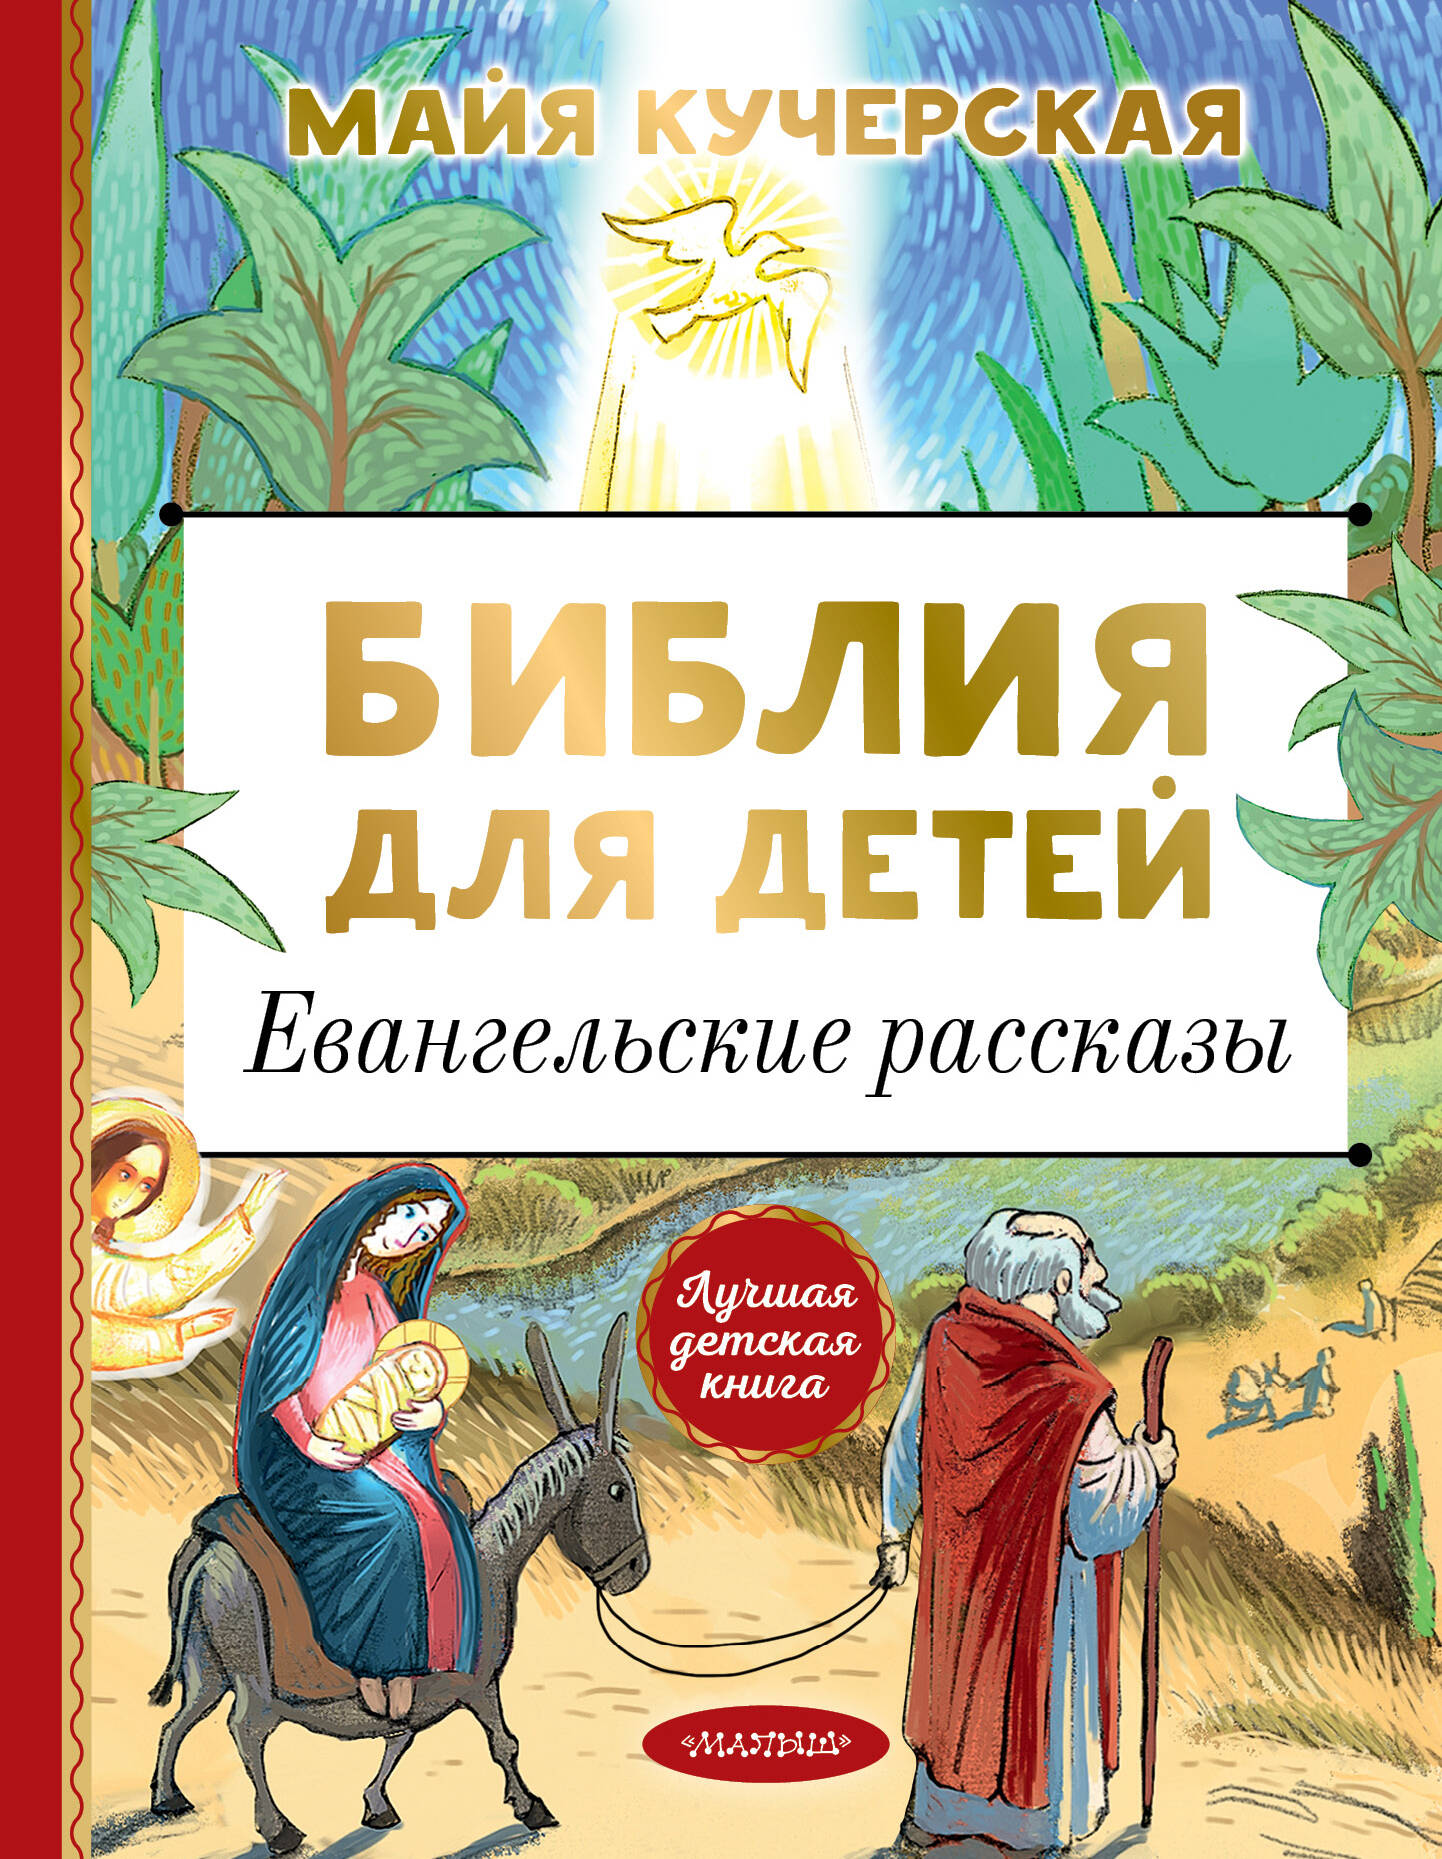 Кучерская Майя Александровна - Библия для детей. Евангельские рассказы